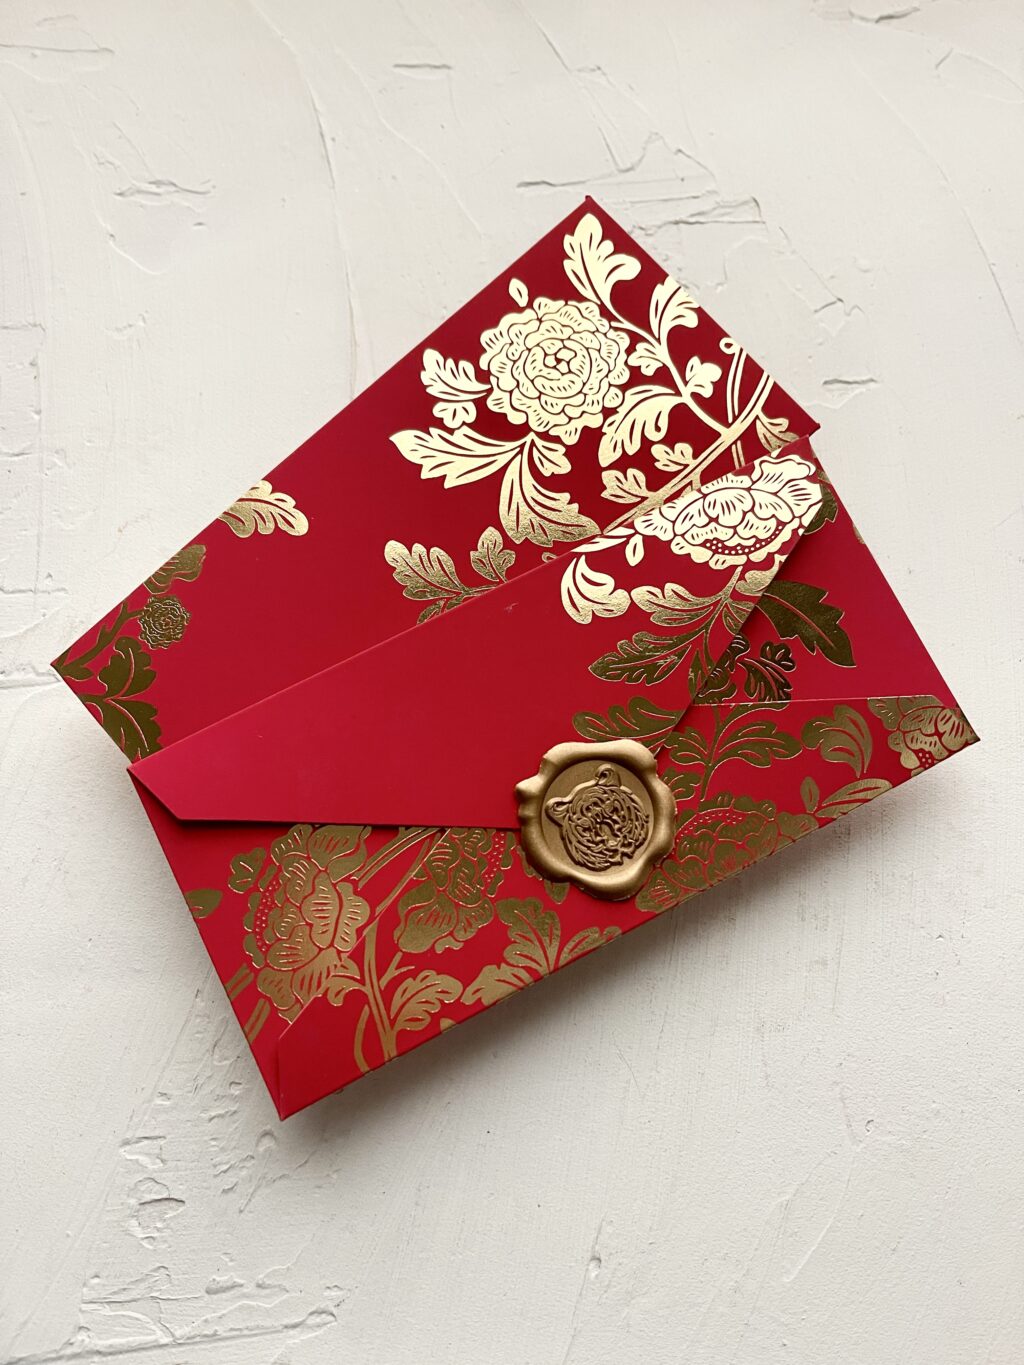 peony chinese red envelope, ang pow, ang bao